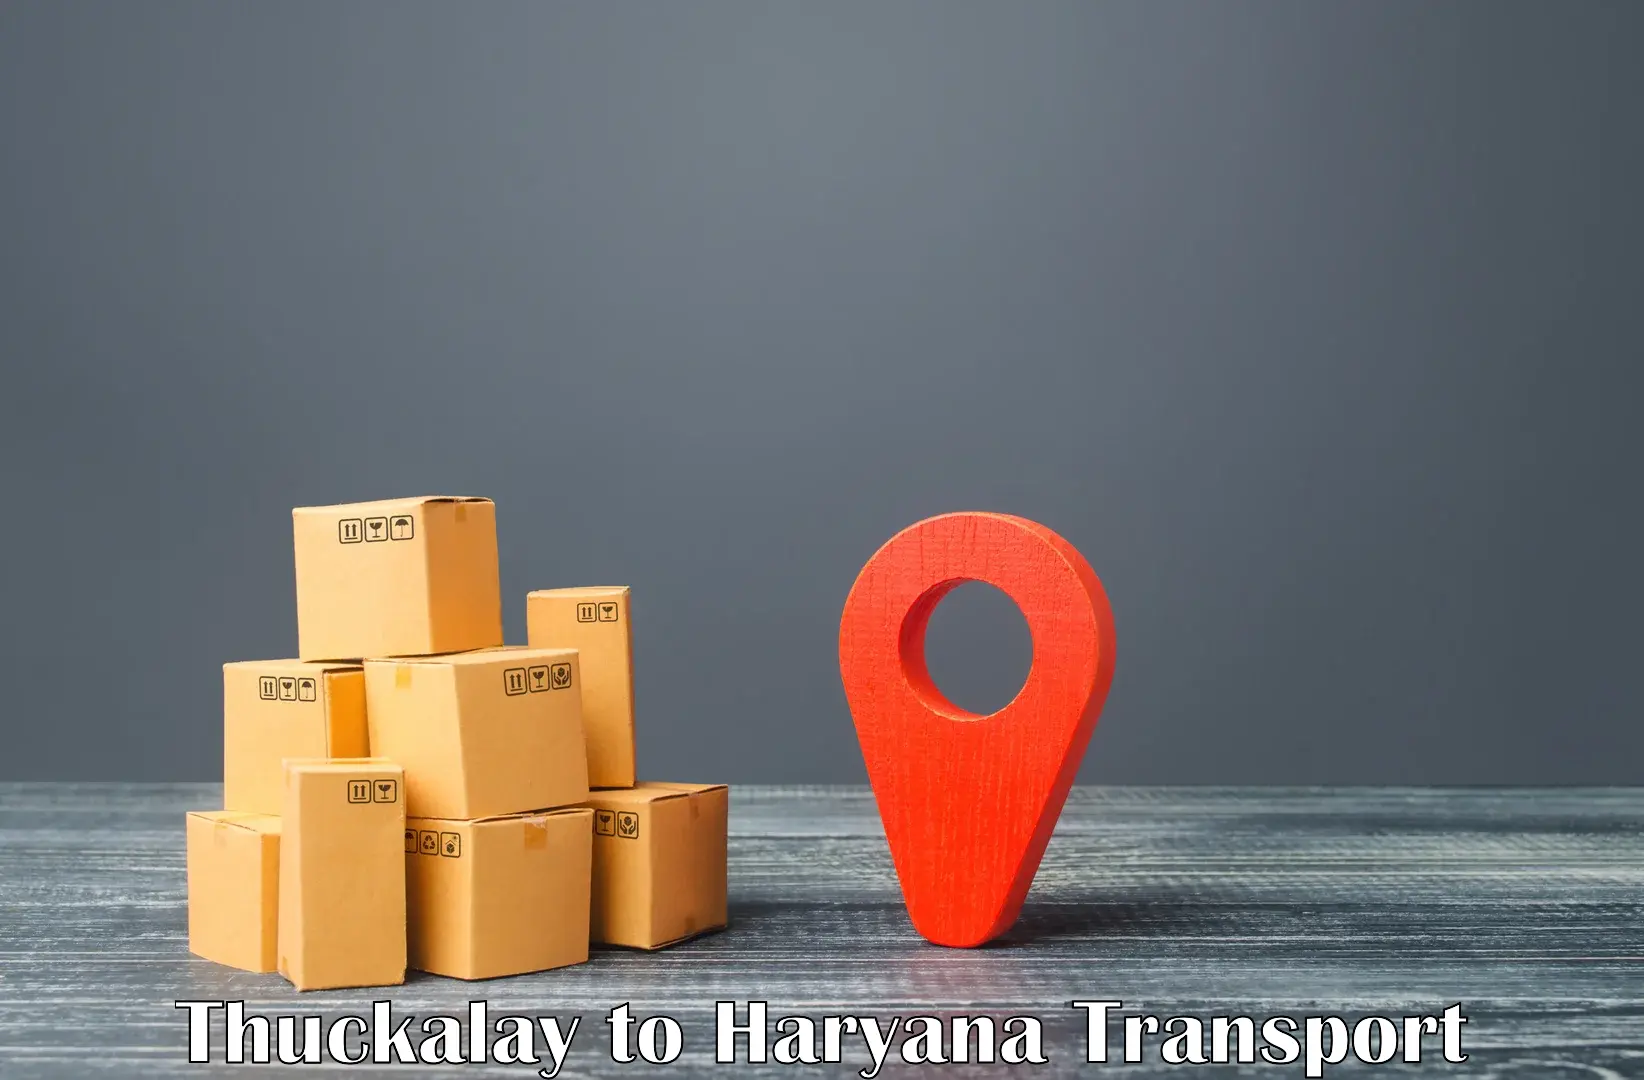 Daily parcel service transport Thuckalay to Ambala